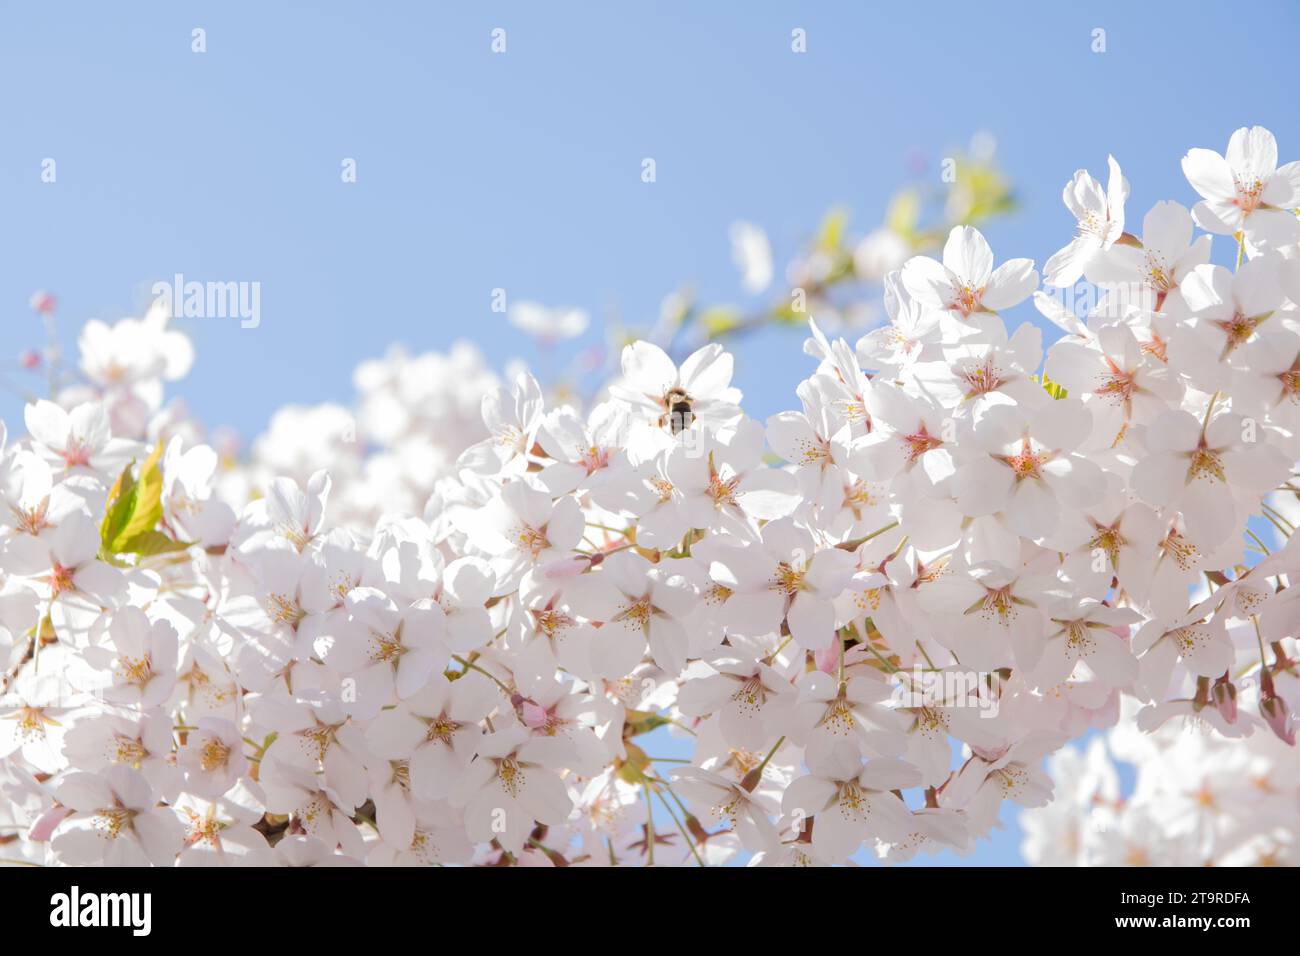 Fotografie, Sakura, Kirschblüte, blauer klarer Himmel, leerer Raum, weiße Blumen, Nahaufnahme, horizontal, Natur, Pflanze, Frühling, Wachstum, keine Leute, c Stockfoto